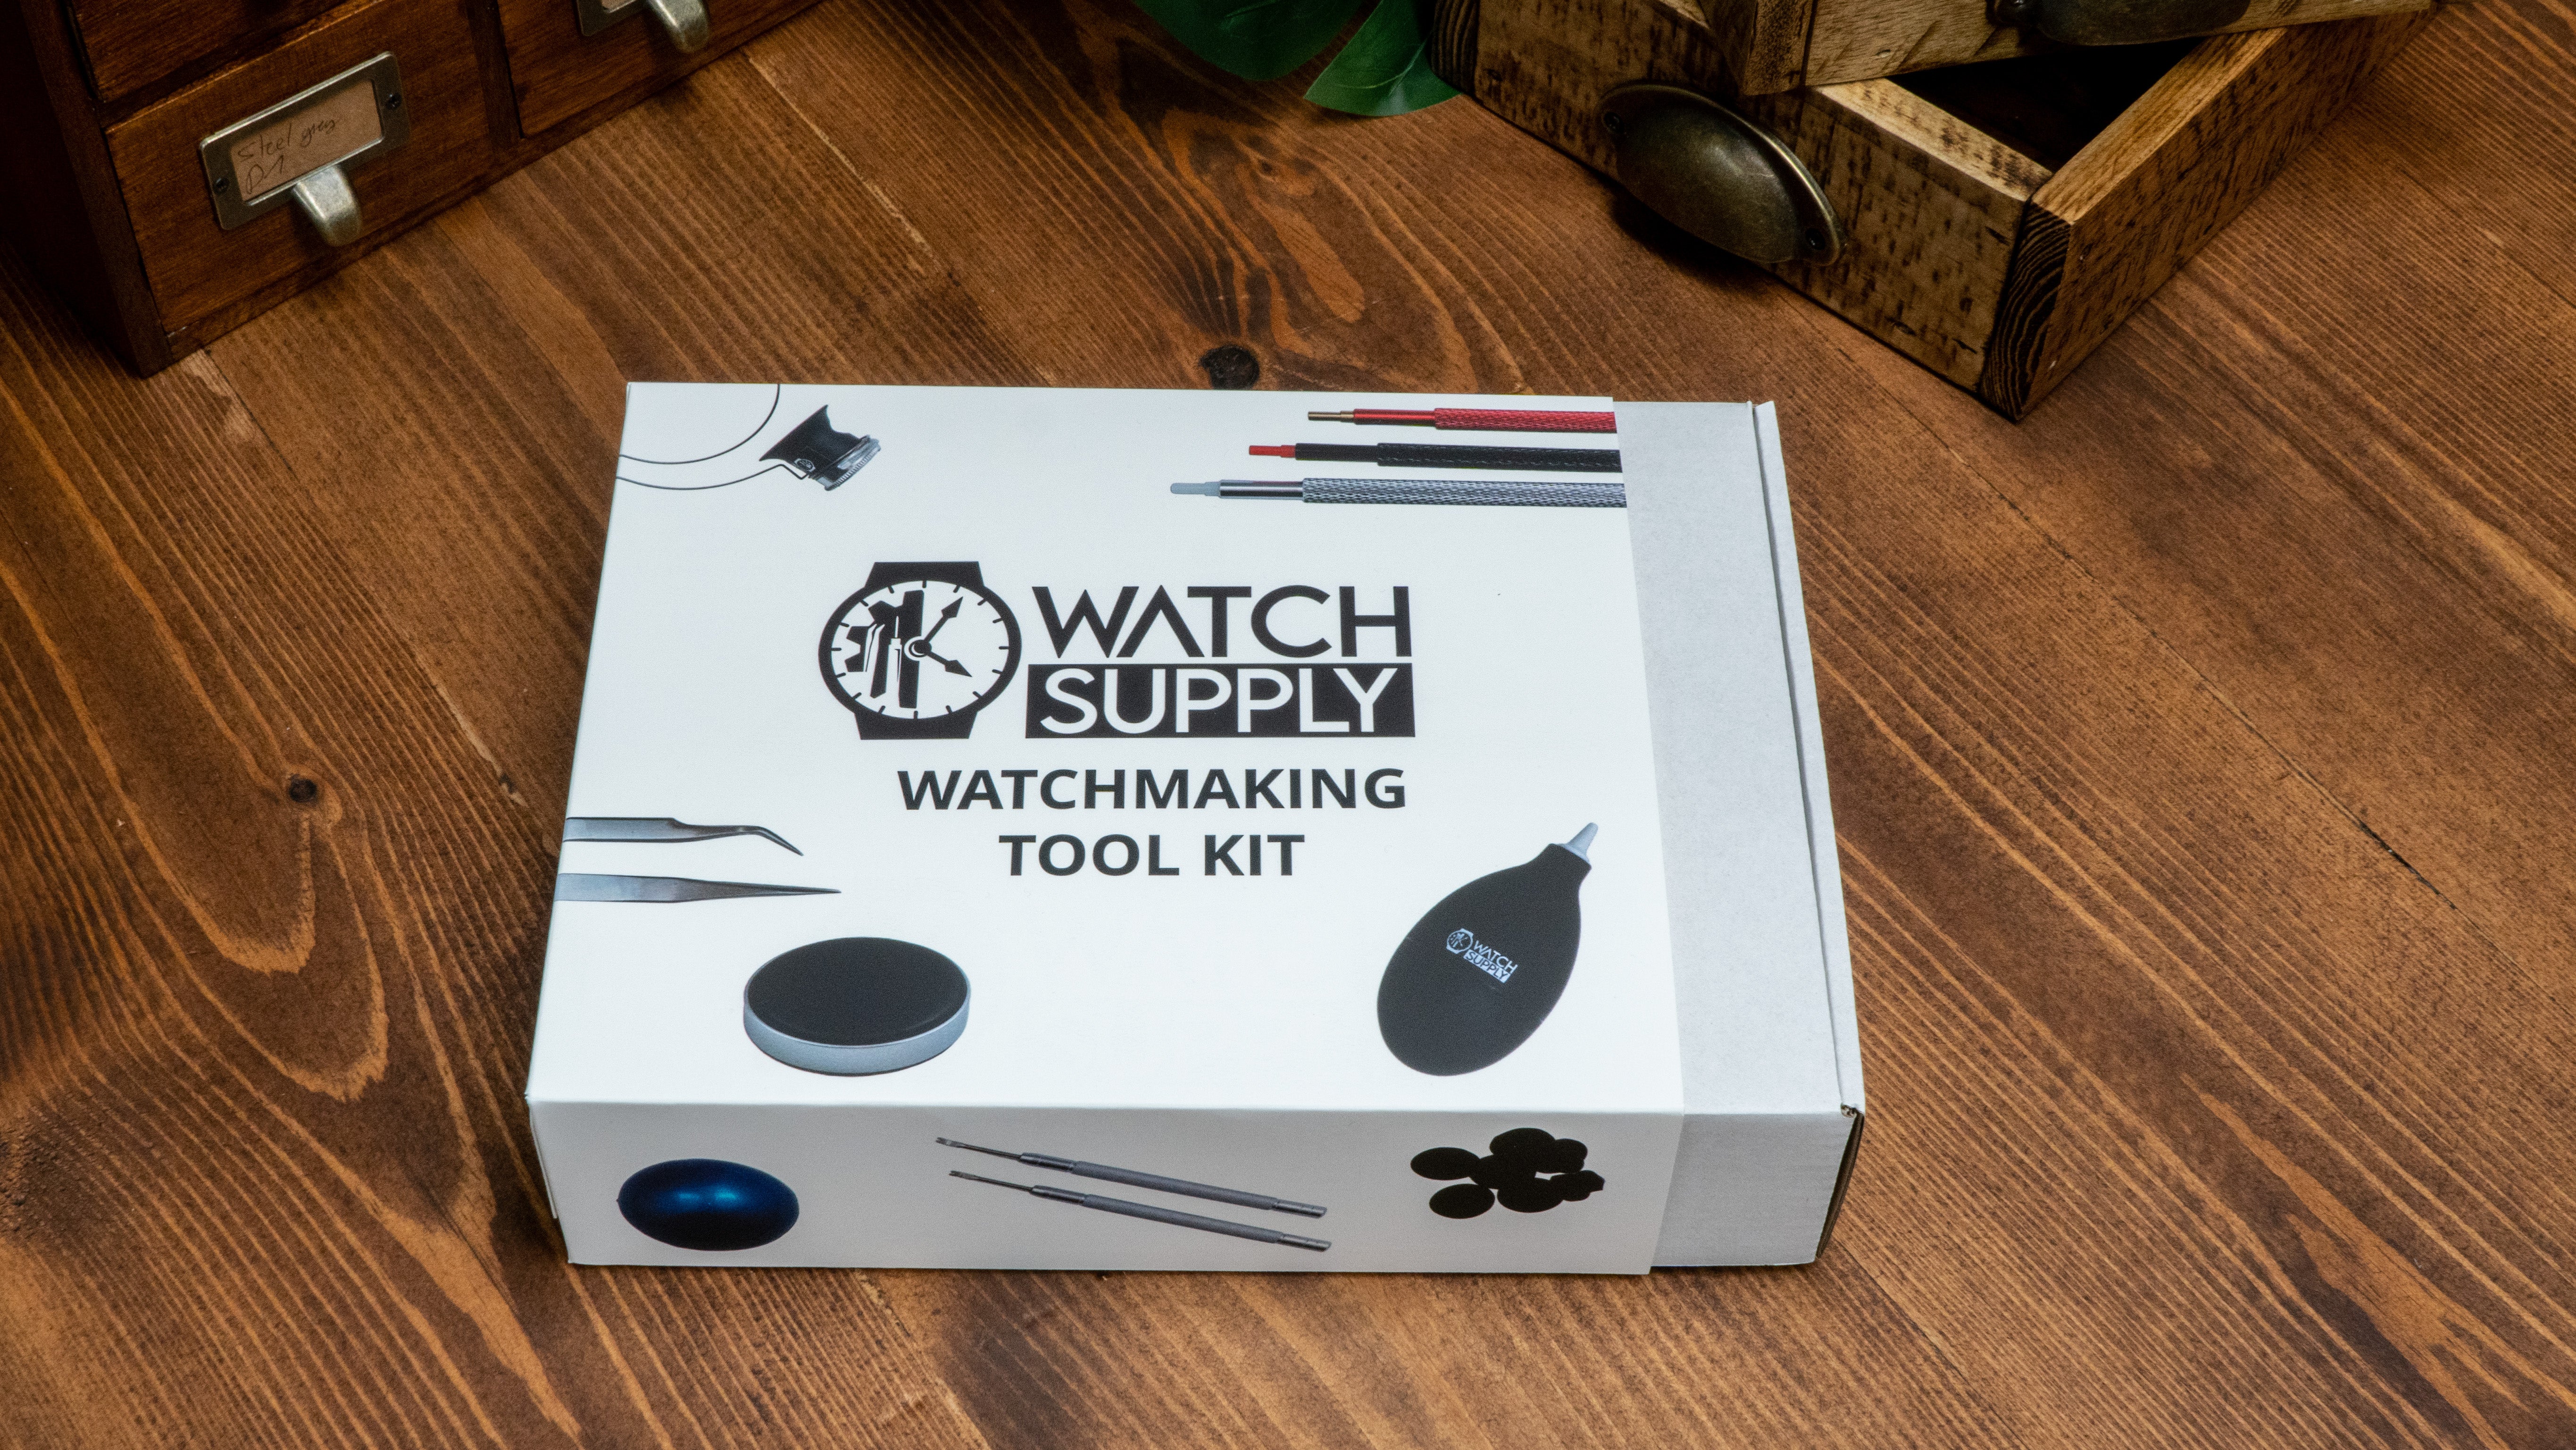 Full watchmaking tool kit